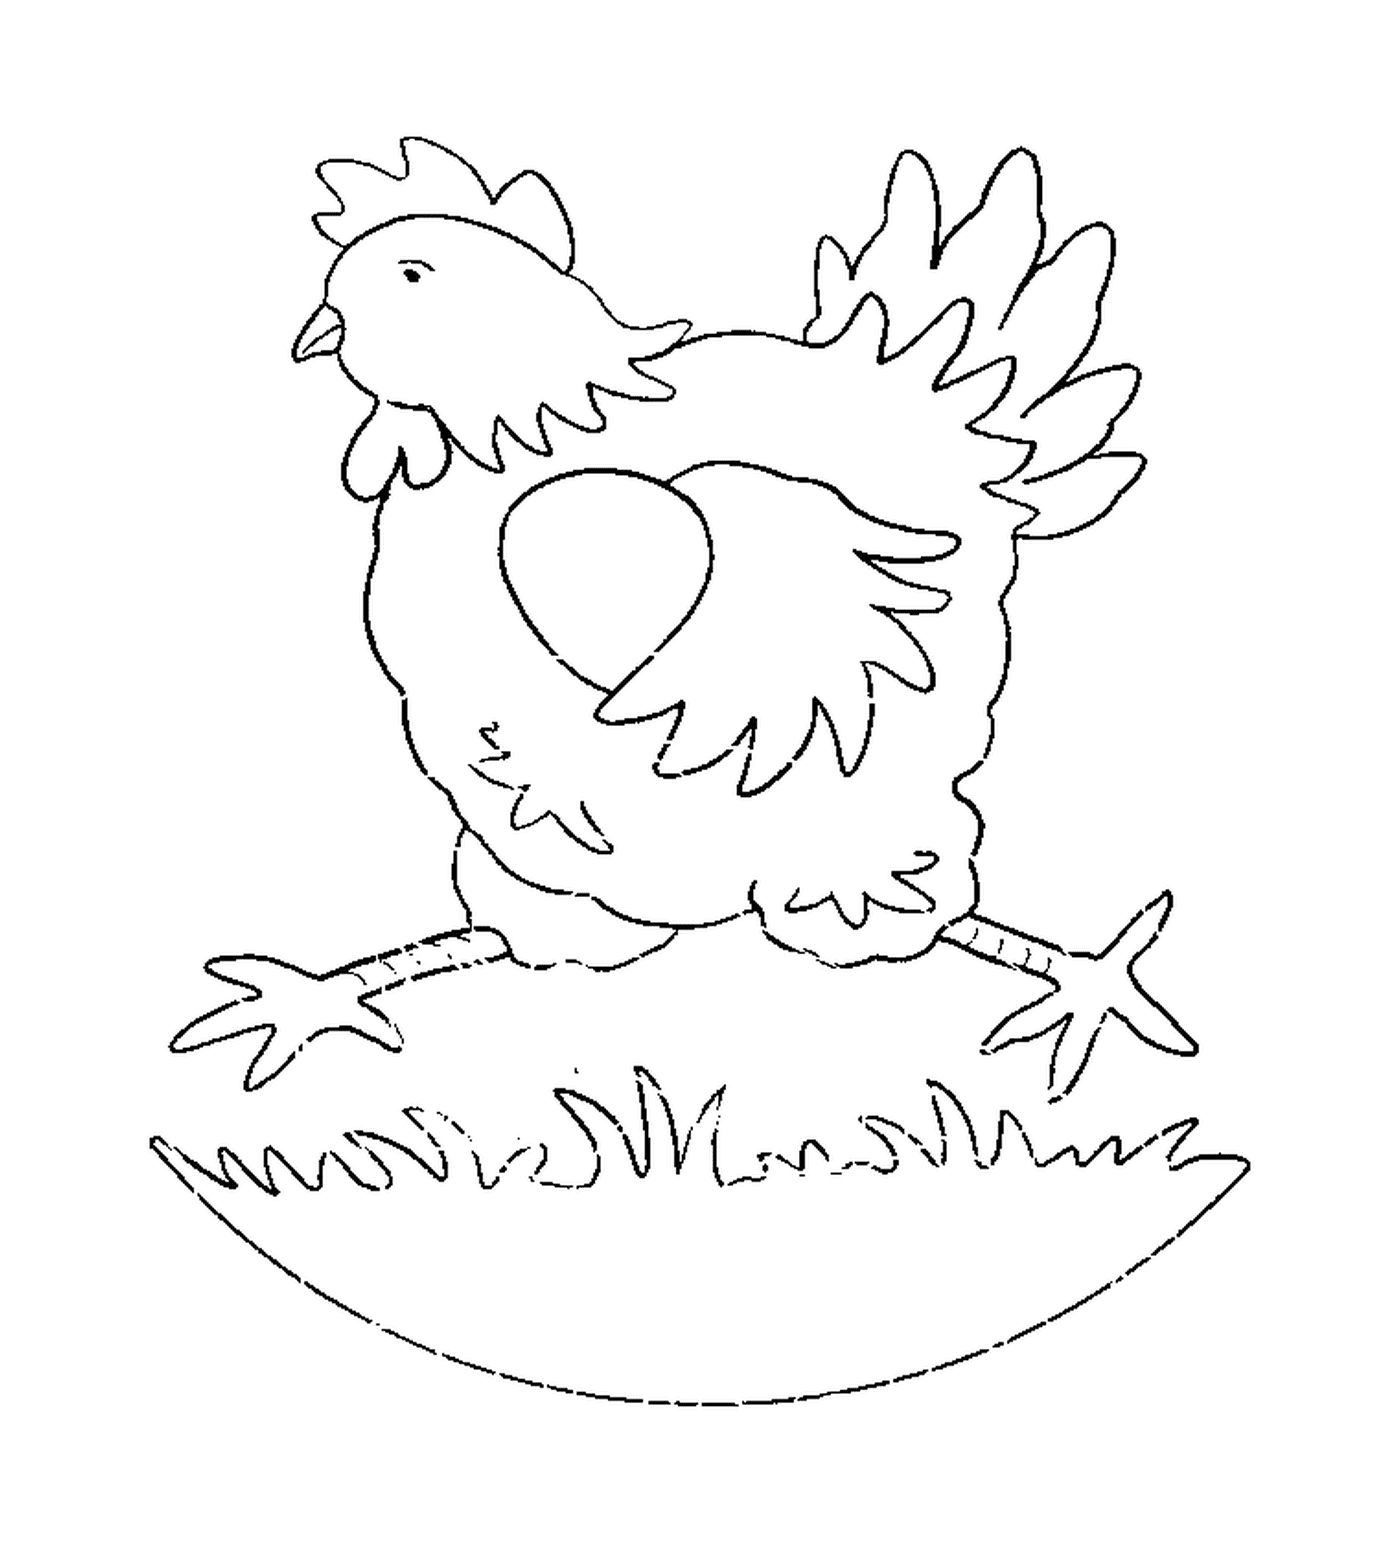  Pollo sull'uovo in piedi 